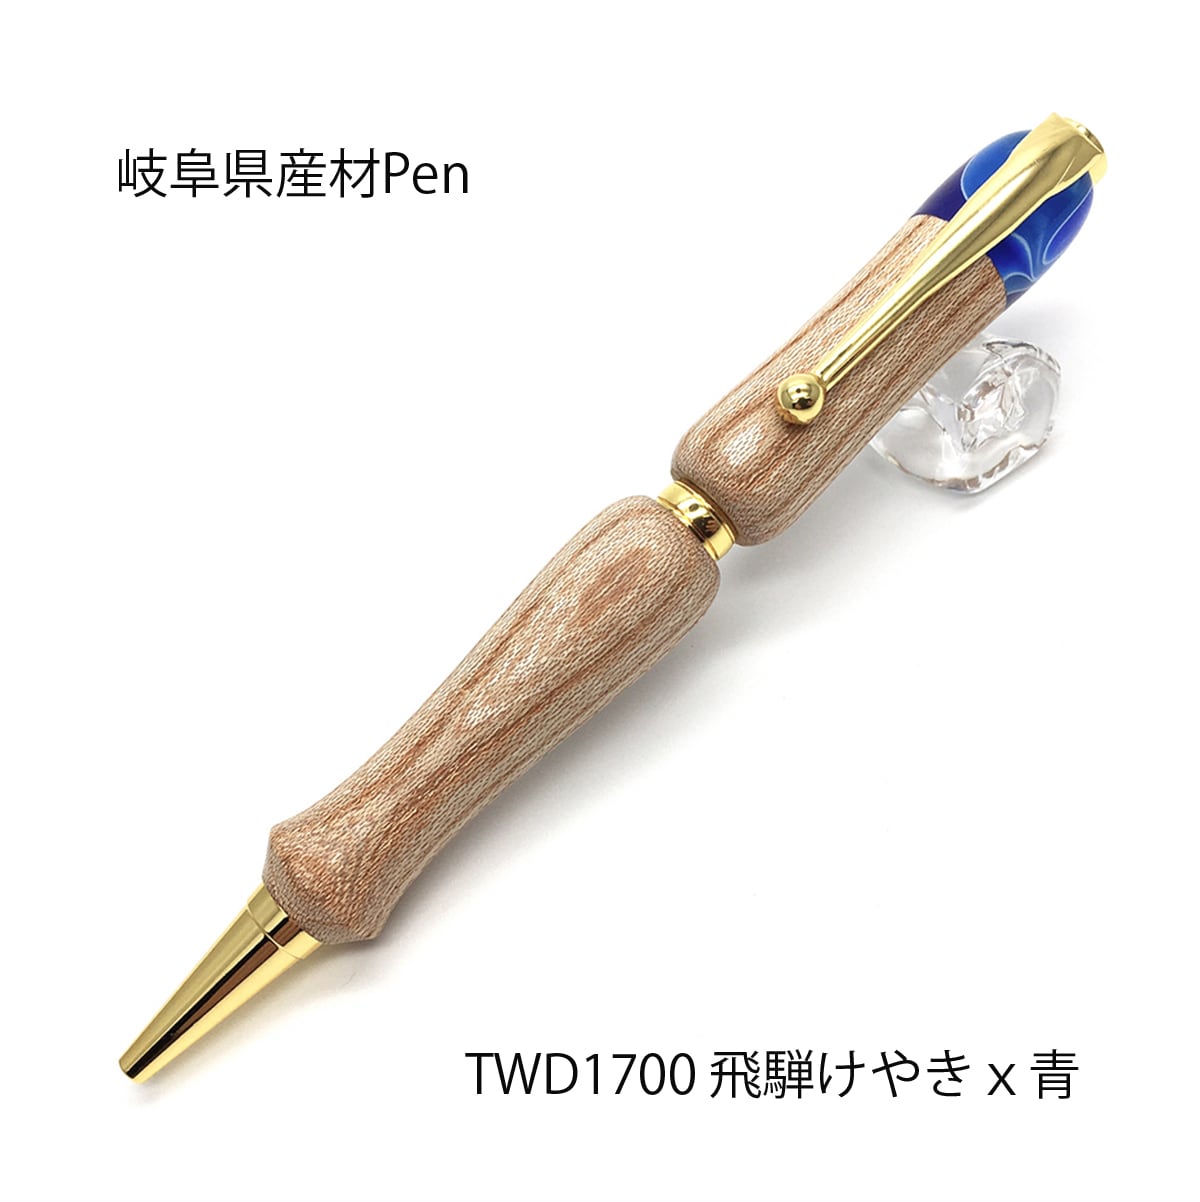 岐阜高山の飛騨五木を使用した国産 日本製 ペン 職人の手による一本で